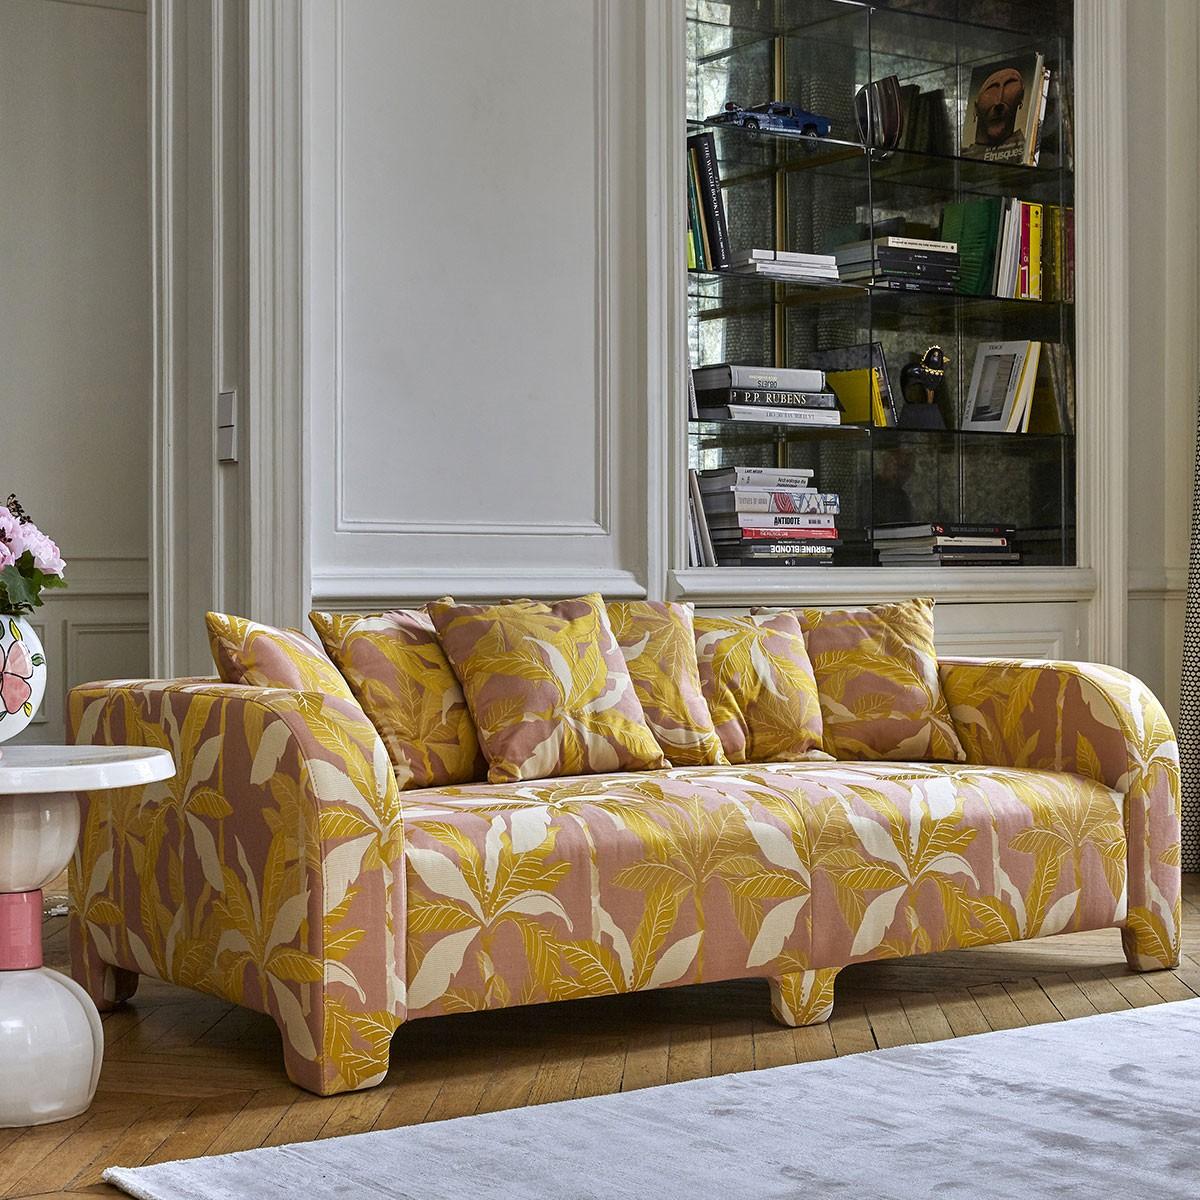 Popus Editions Graziella 4 Seater-Sofa mit rosa Como-Samtpolsterung

Ein Fuß, der einen anderen verbirgt. Ein Kissen, das ein anderes verdeckt. Eine Kurve, die eine andere verbirgt, mit zeitgenössischen Linien und einem Sockel, der wie ein